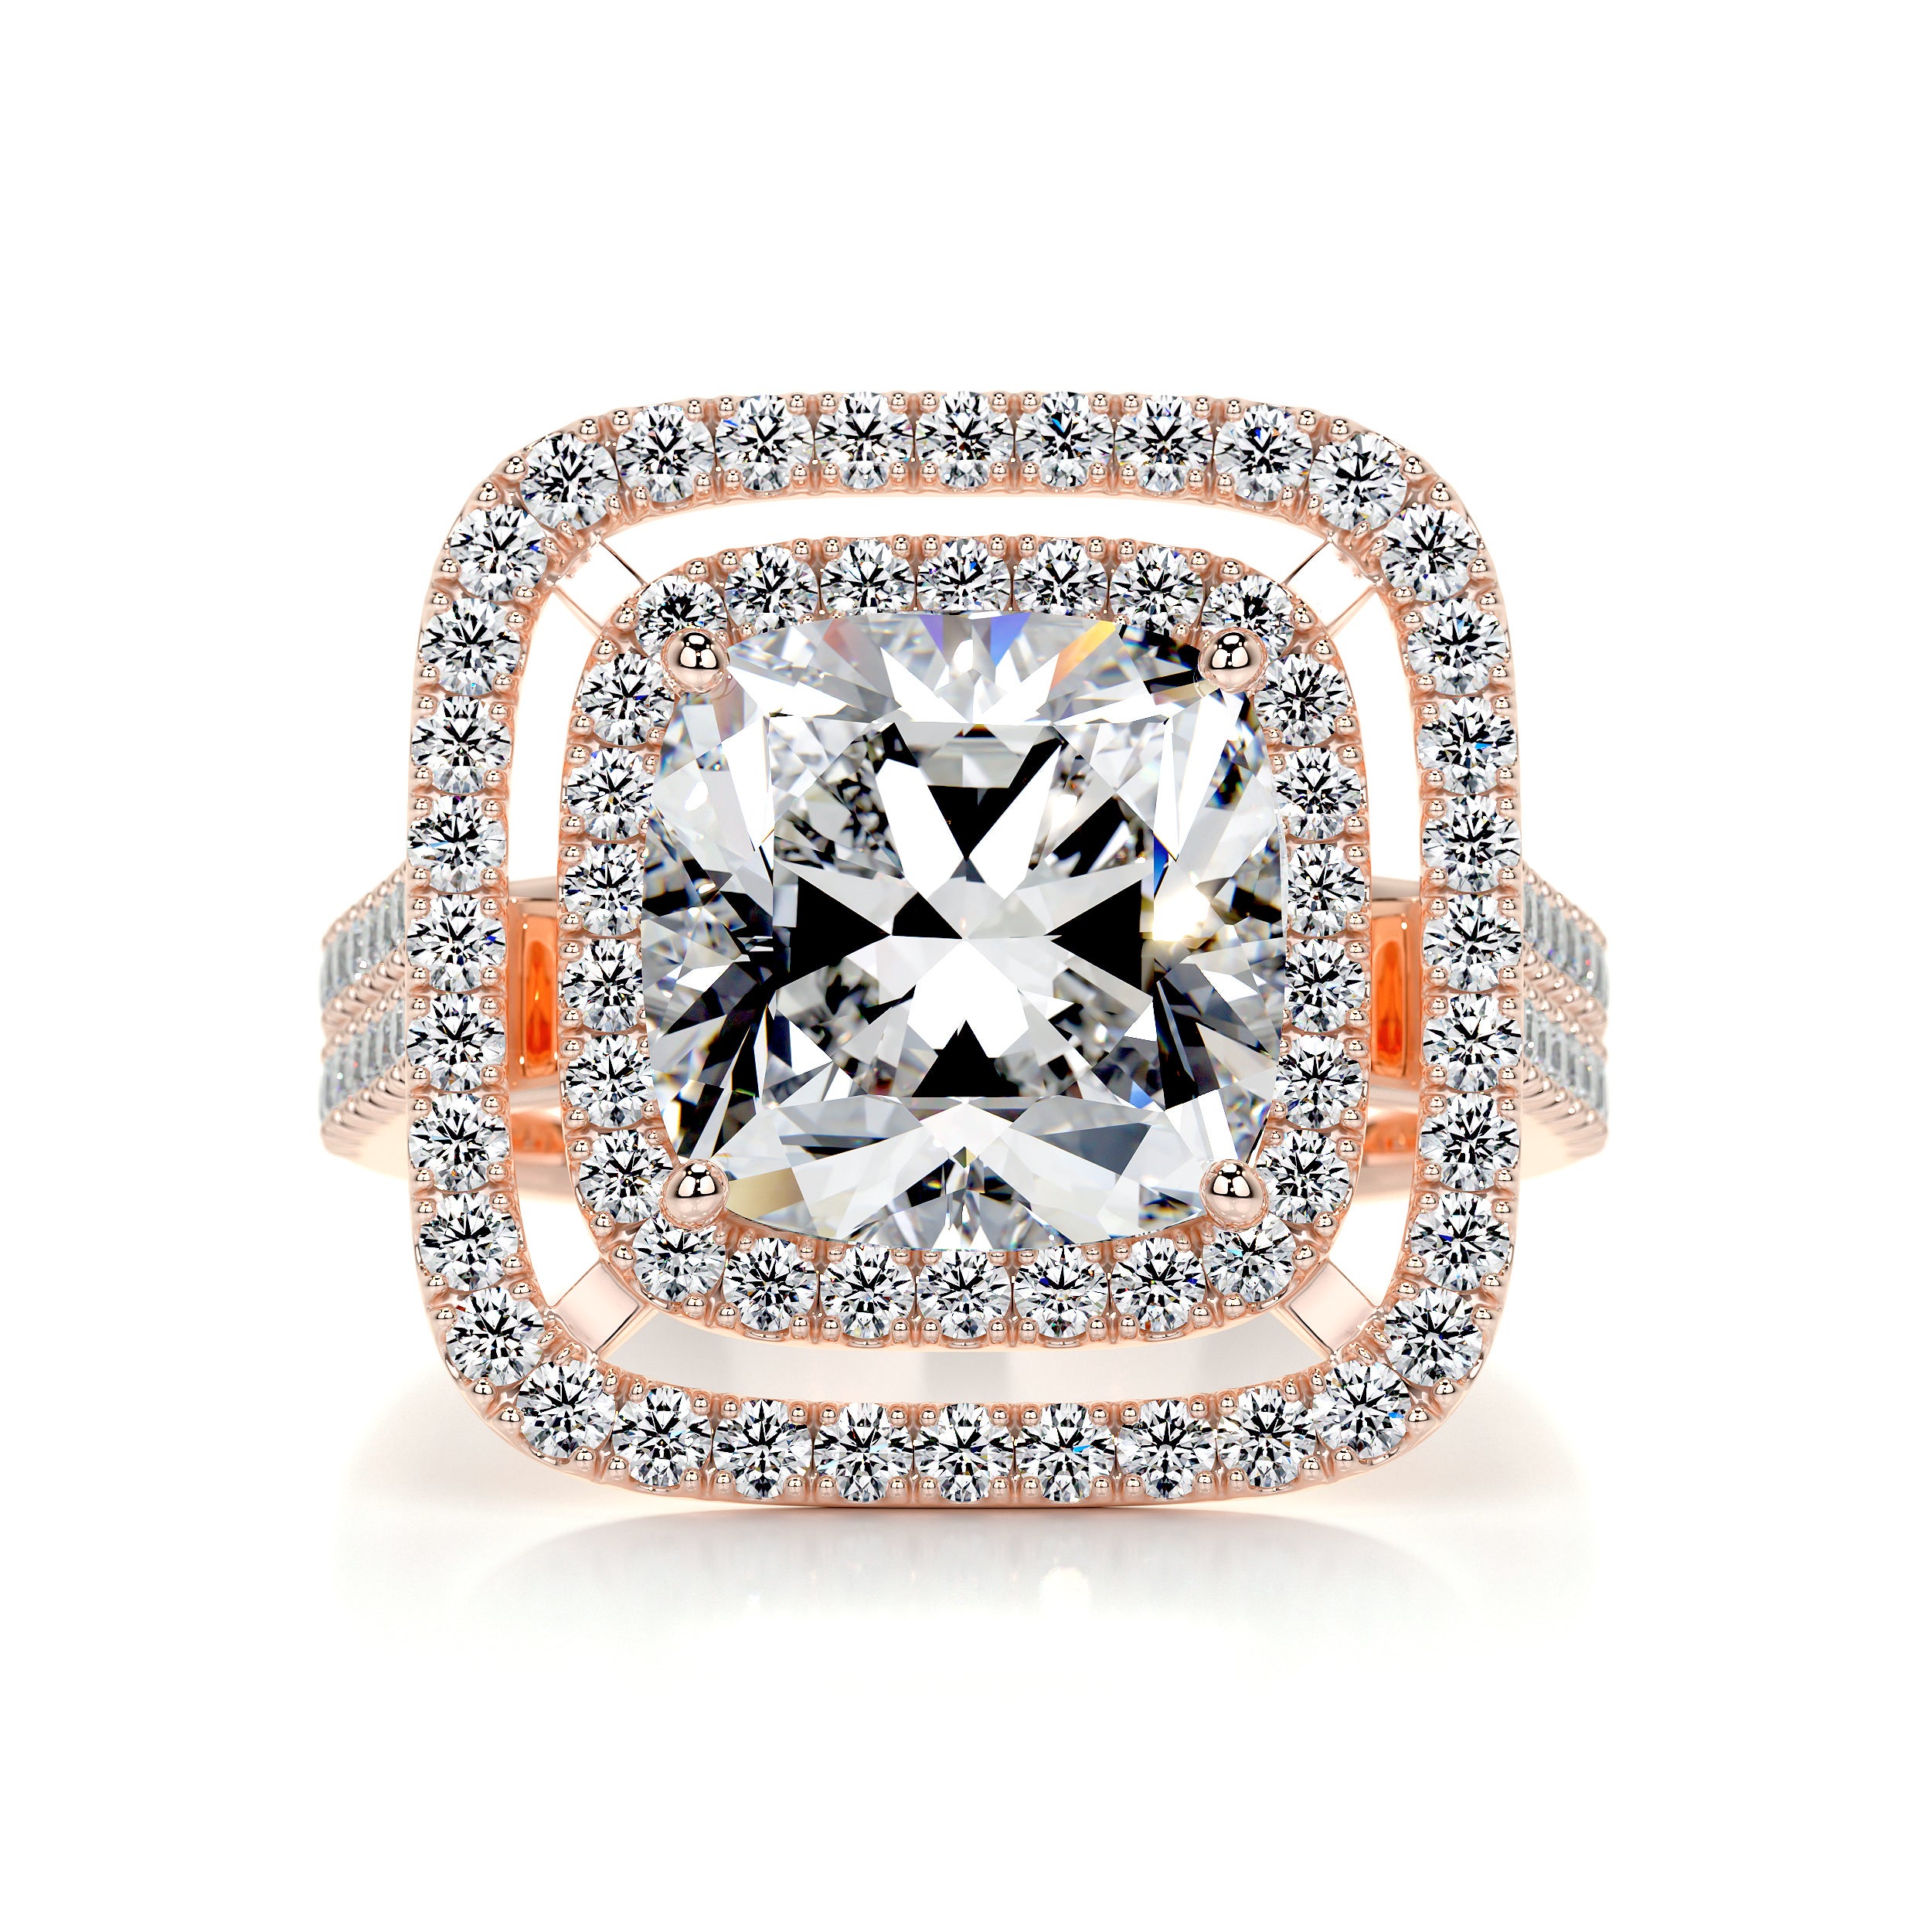 Piper Diamond Engagement Ring   (4 Carat) - 14K Rose Gold